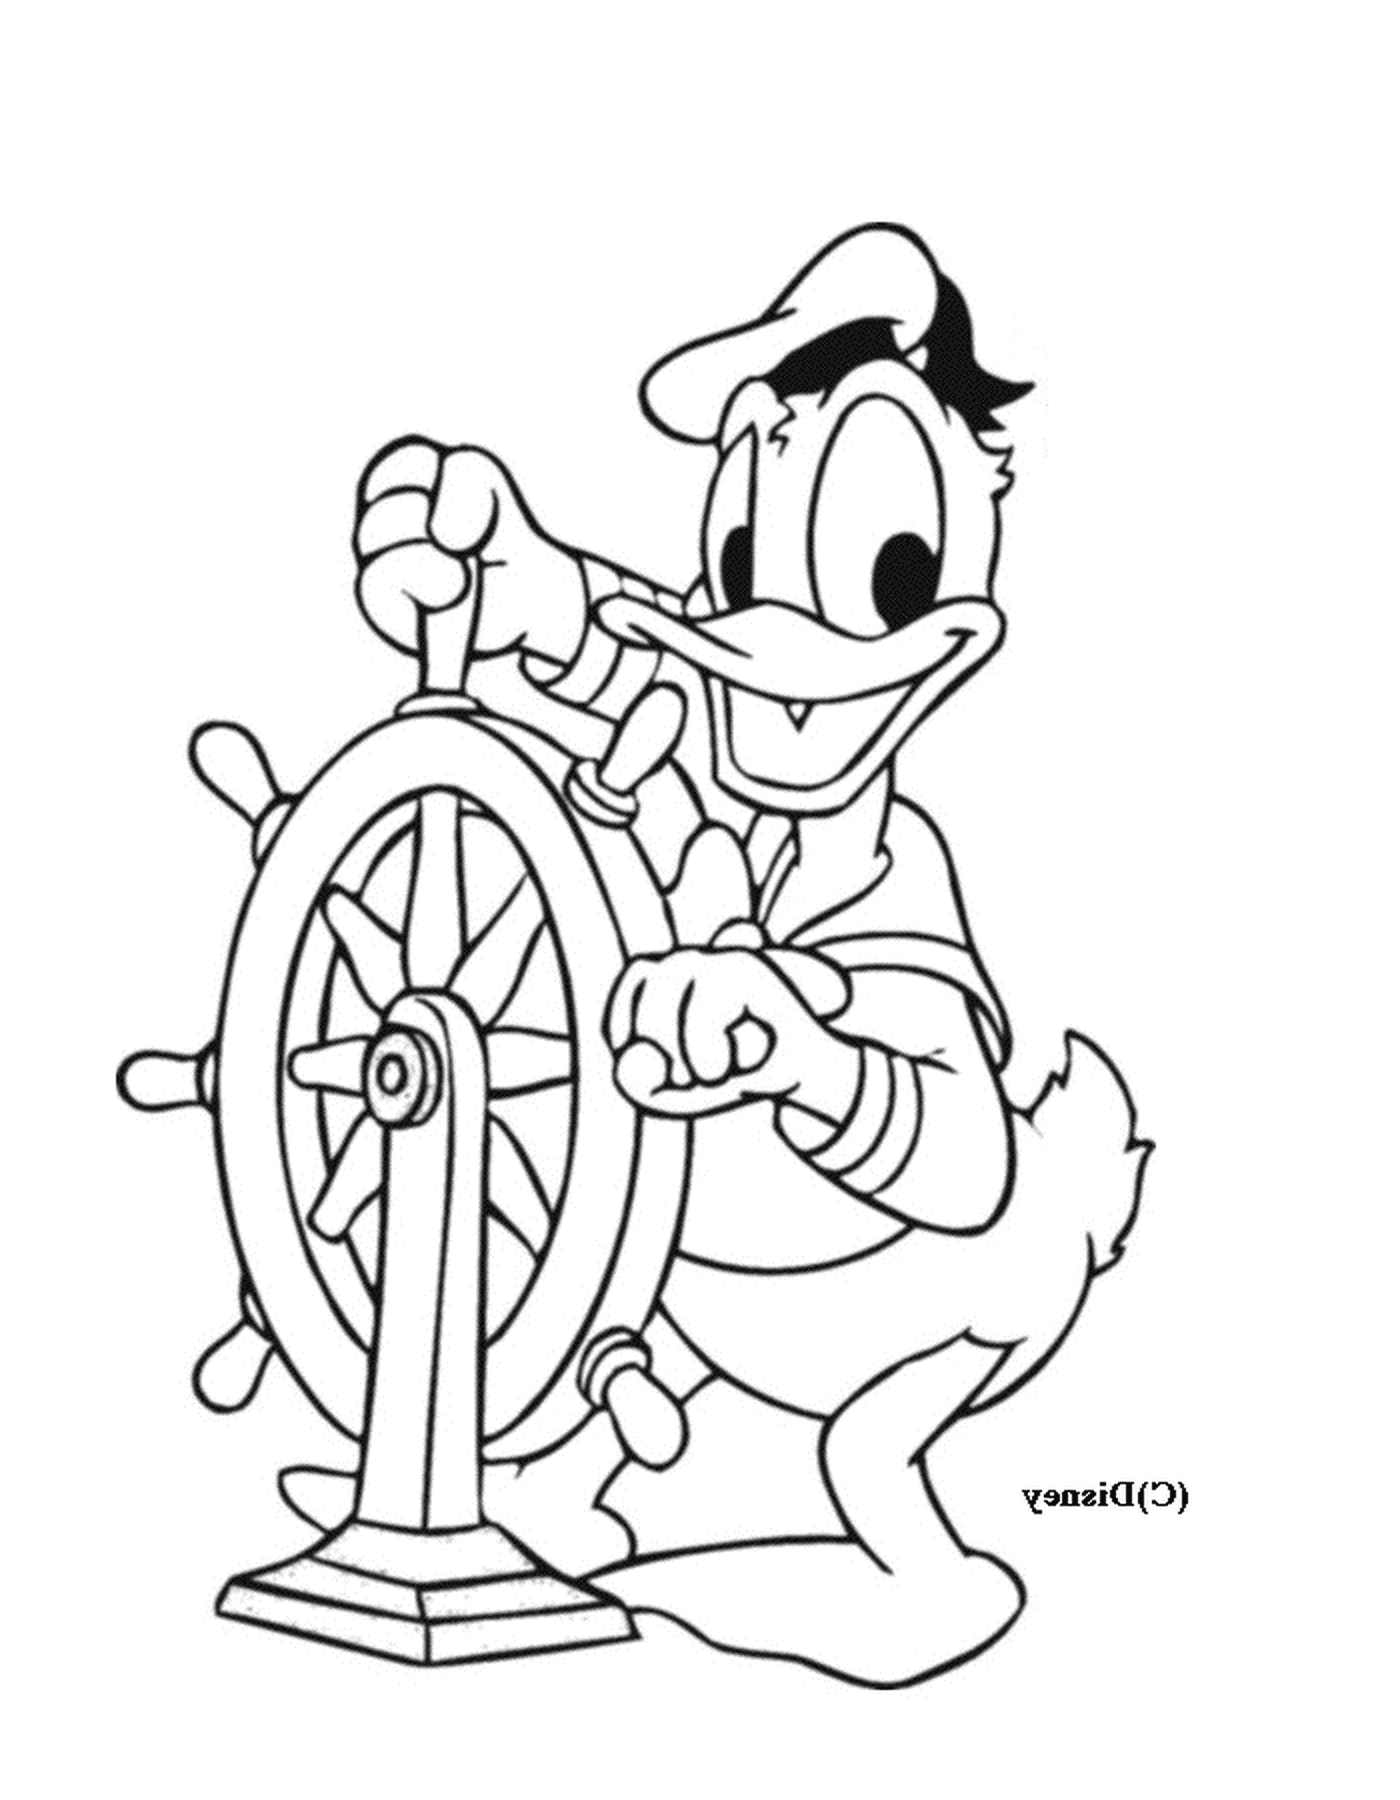   Donald navigue avec assurance 